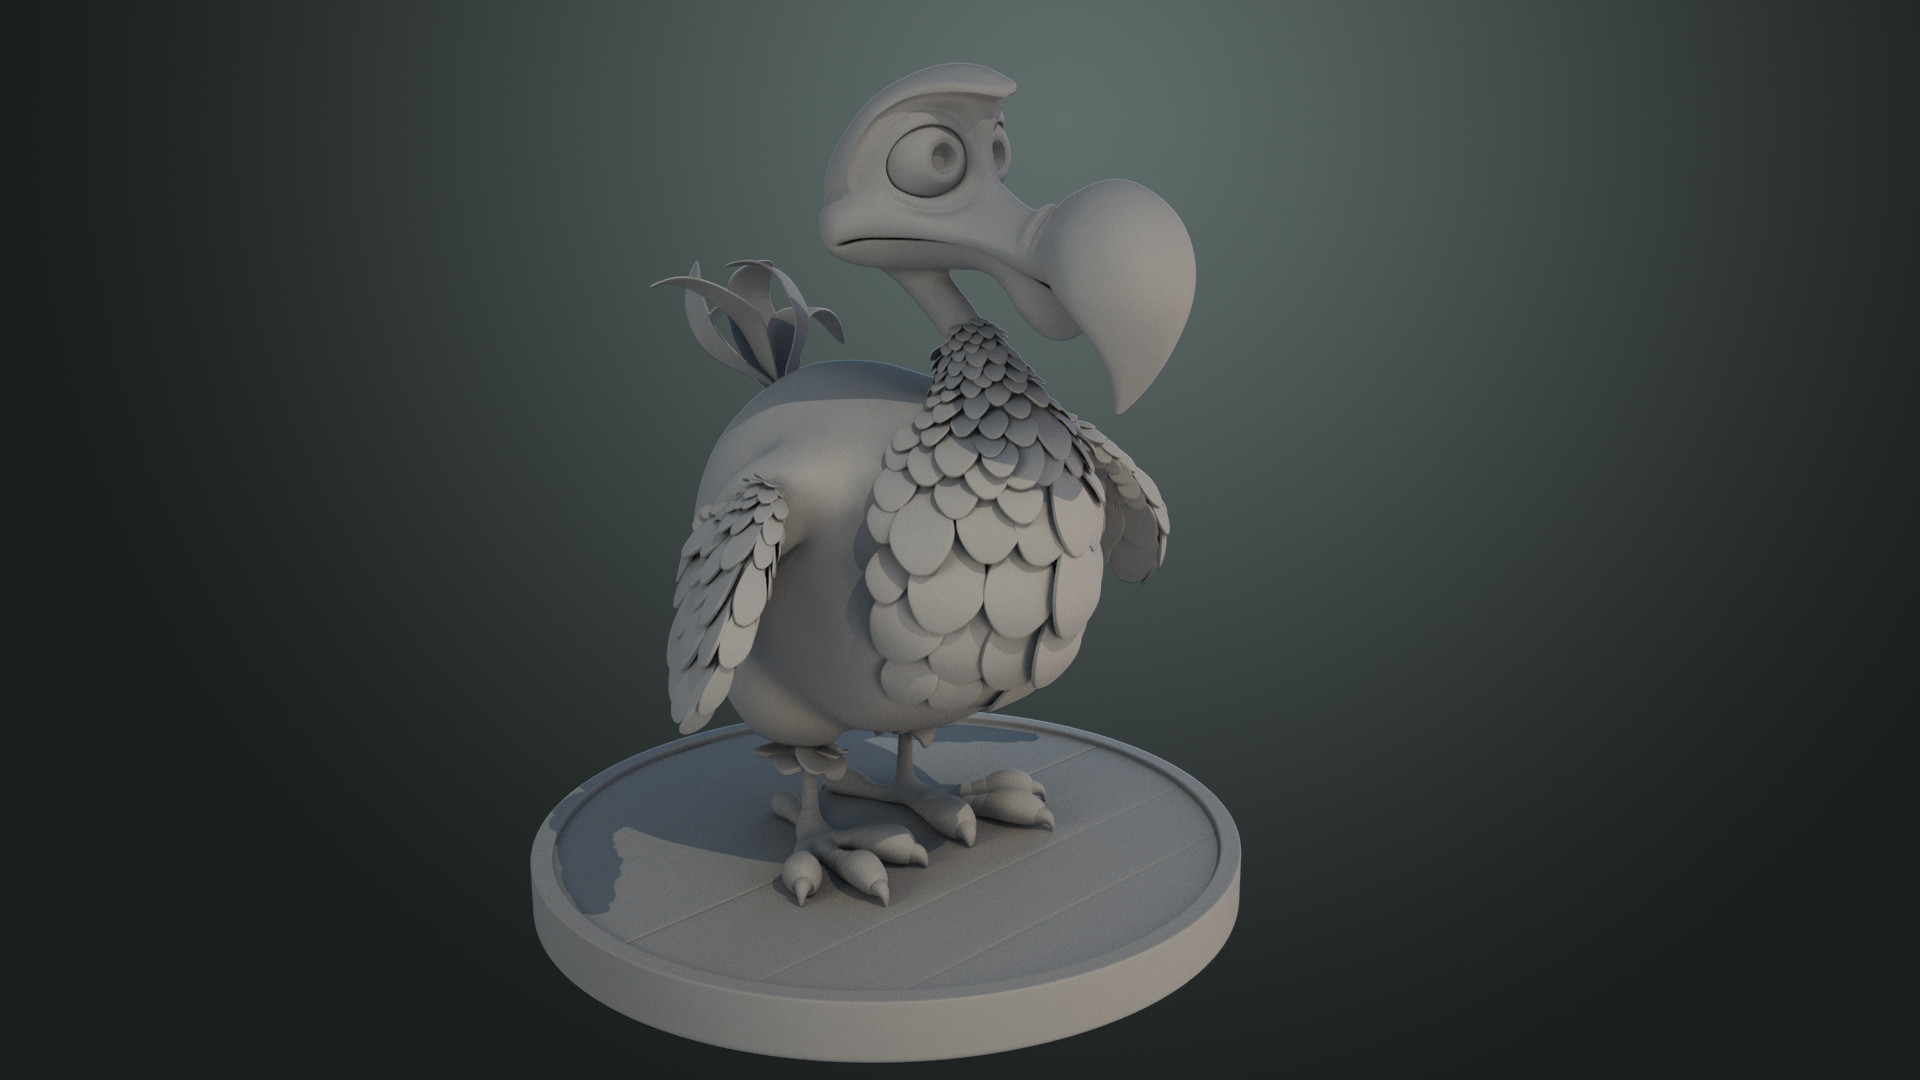 ArtStation - Dodo Cartoon Bird